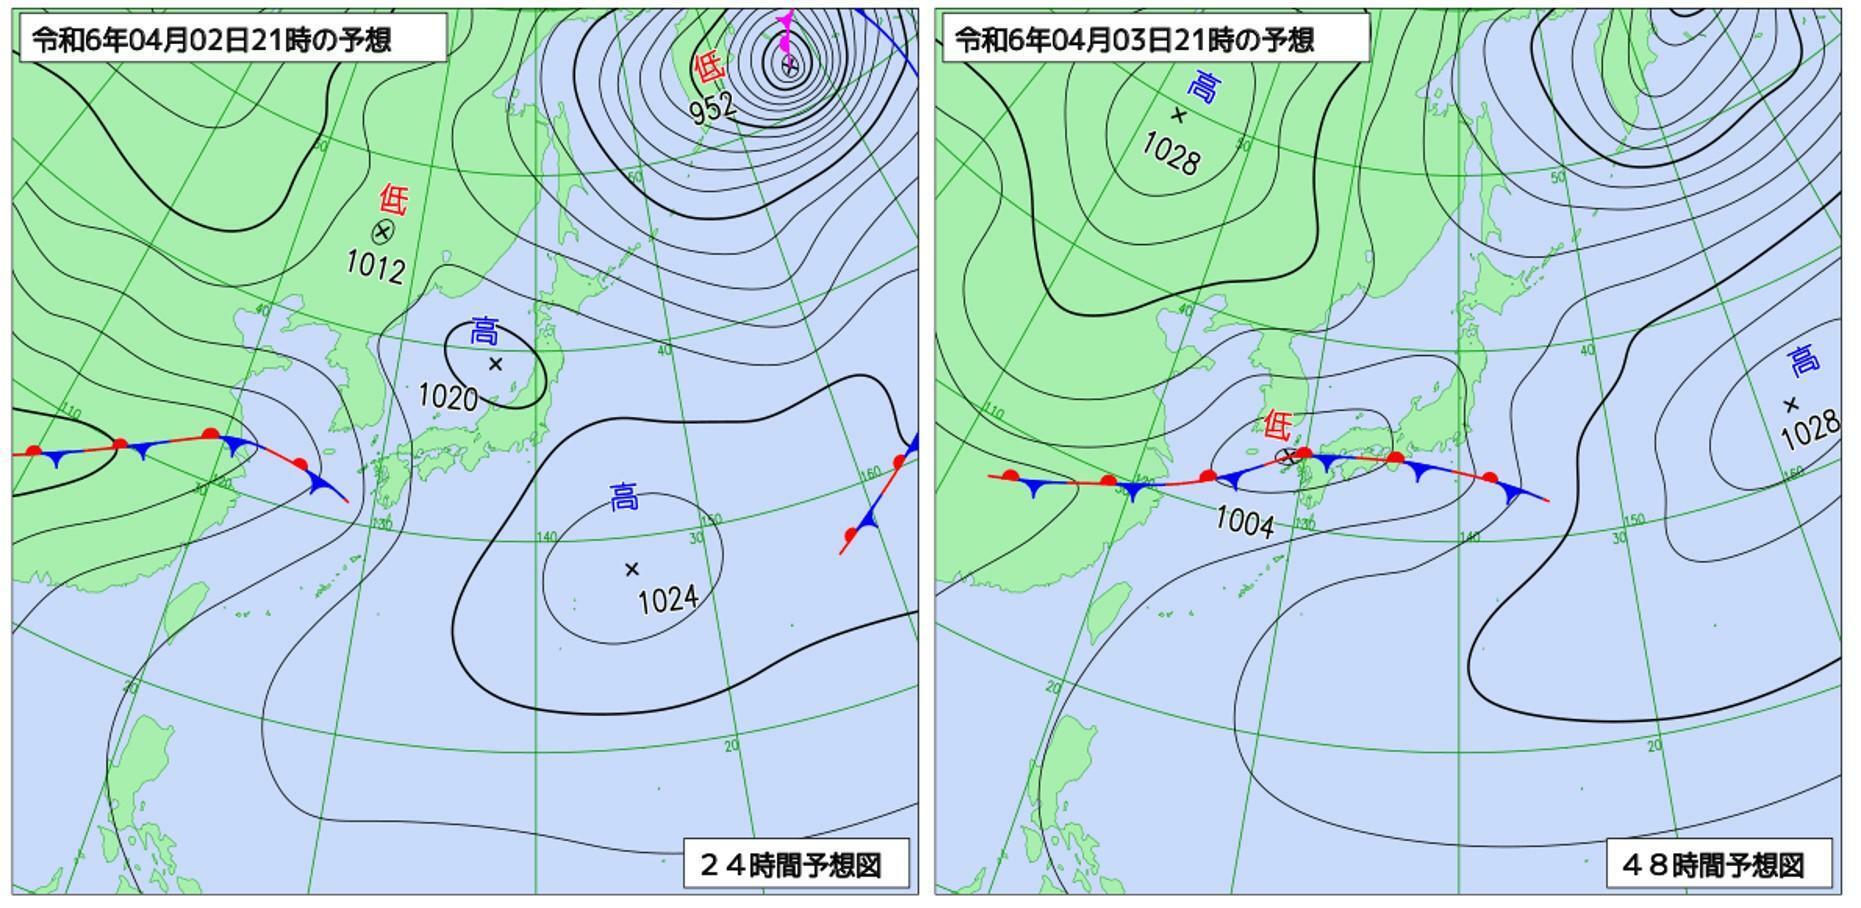 （左）4月2日、（右）4月3日の21時の予想天気図（気象庁HPを元に作成）。西から停滞前線が伸びてきて本州にかかり、さらに前線上には低気圧が発生する見通し。